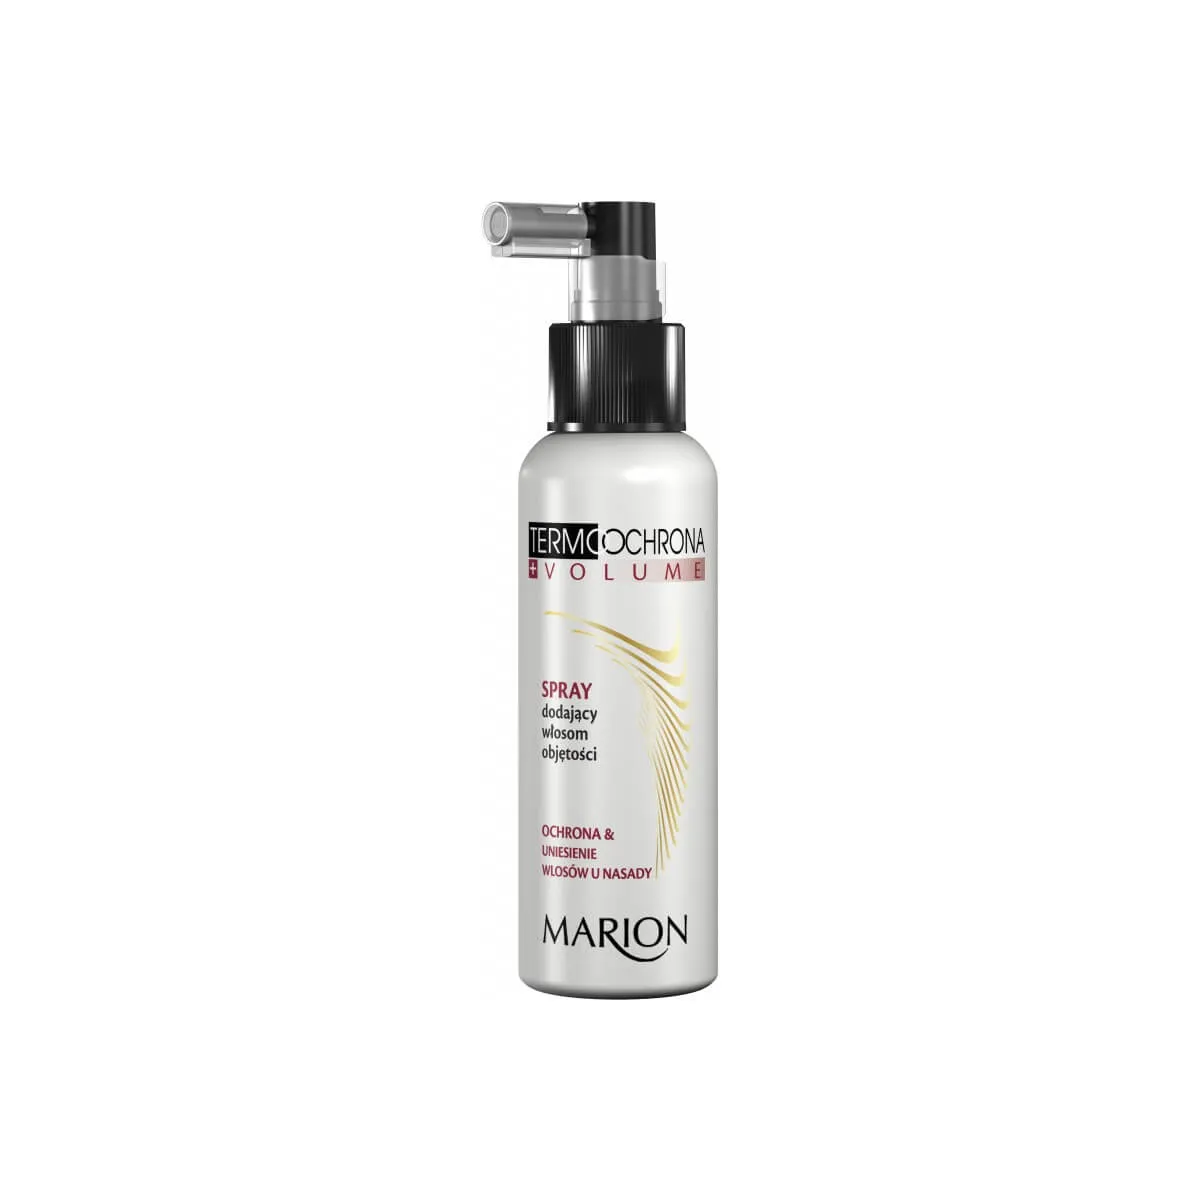 Marion Termoochrona, spray dodający włosom objętości, 130 ml